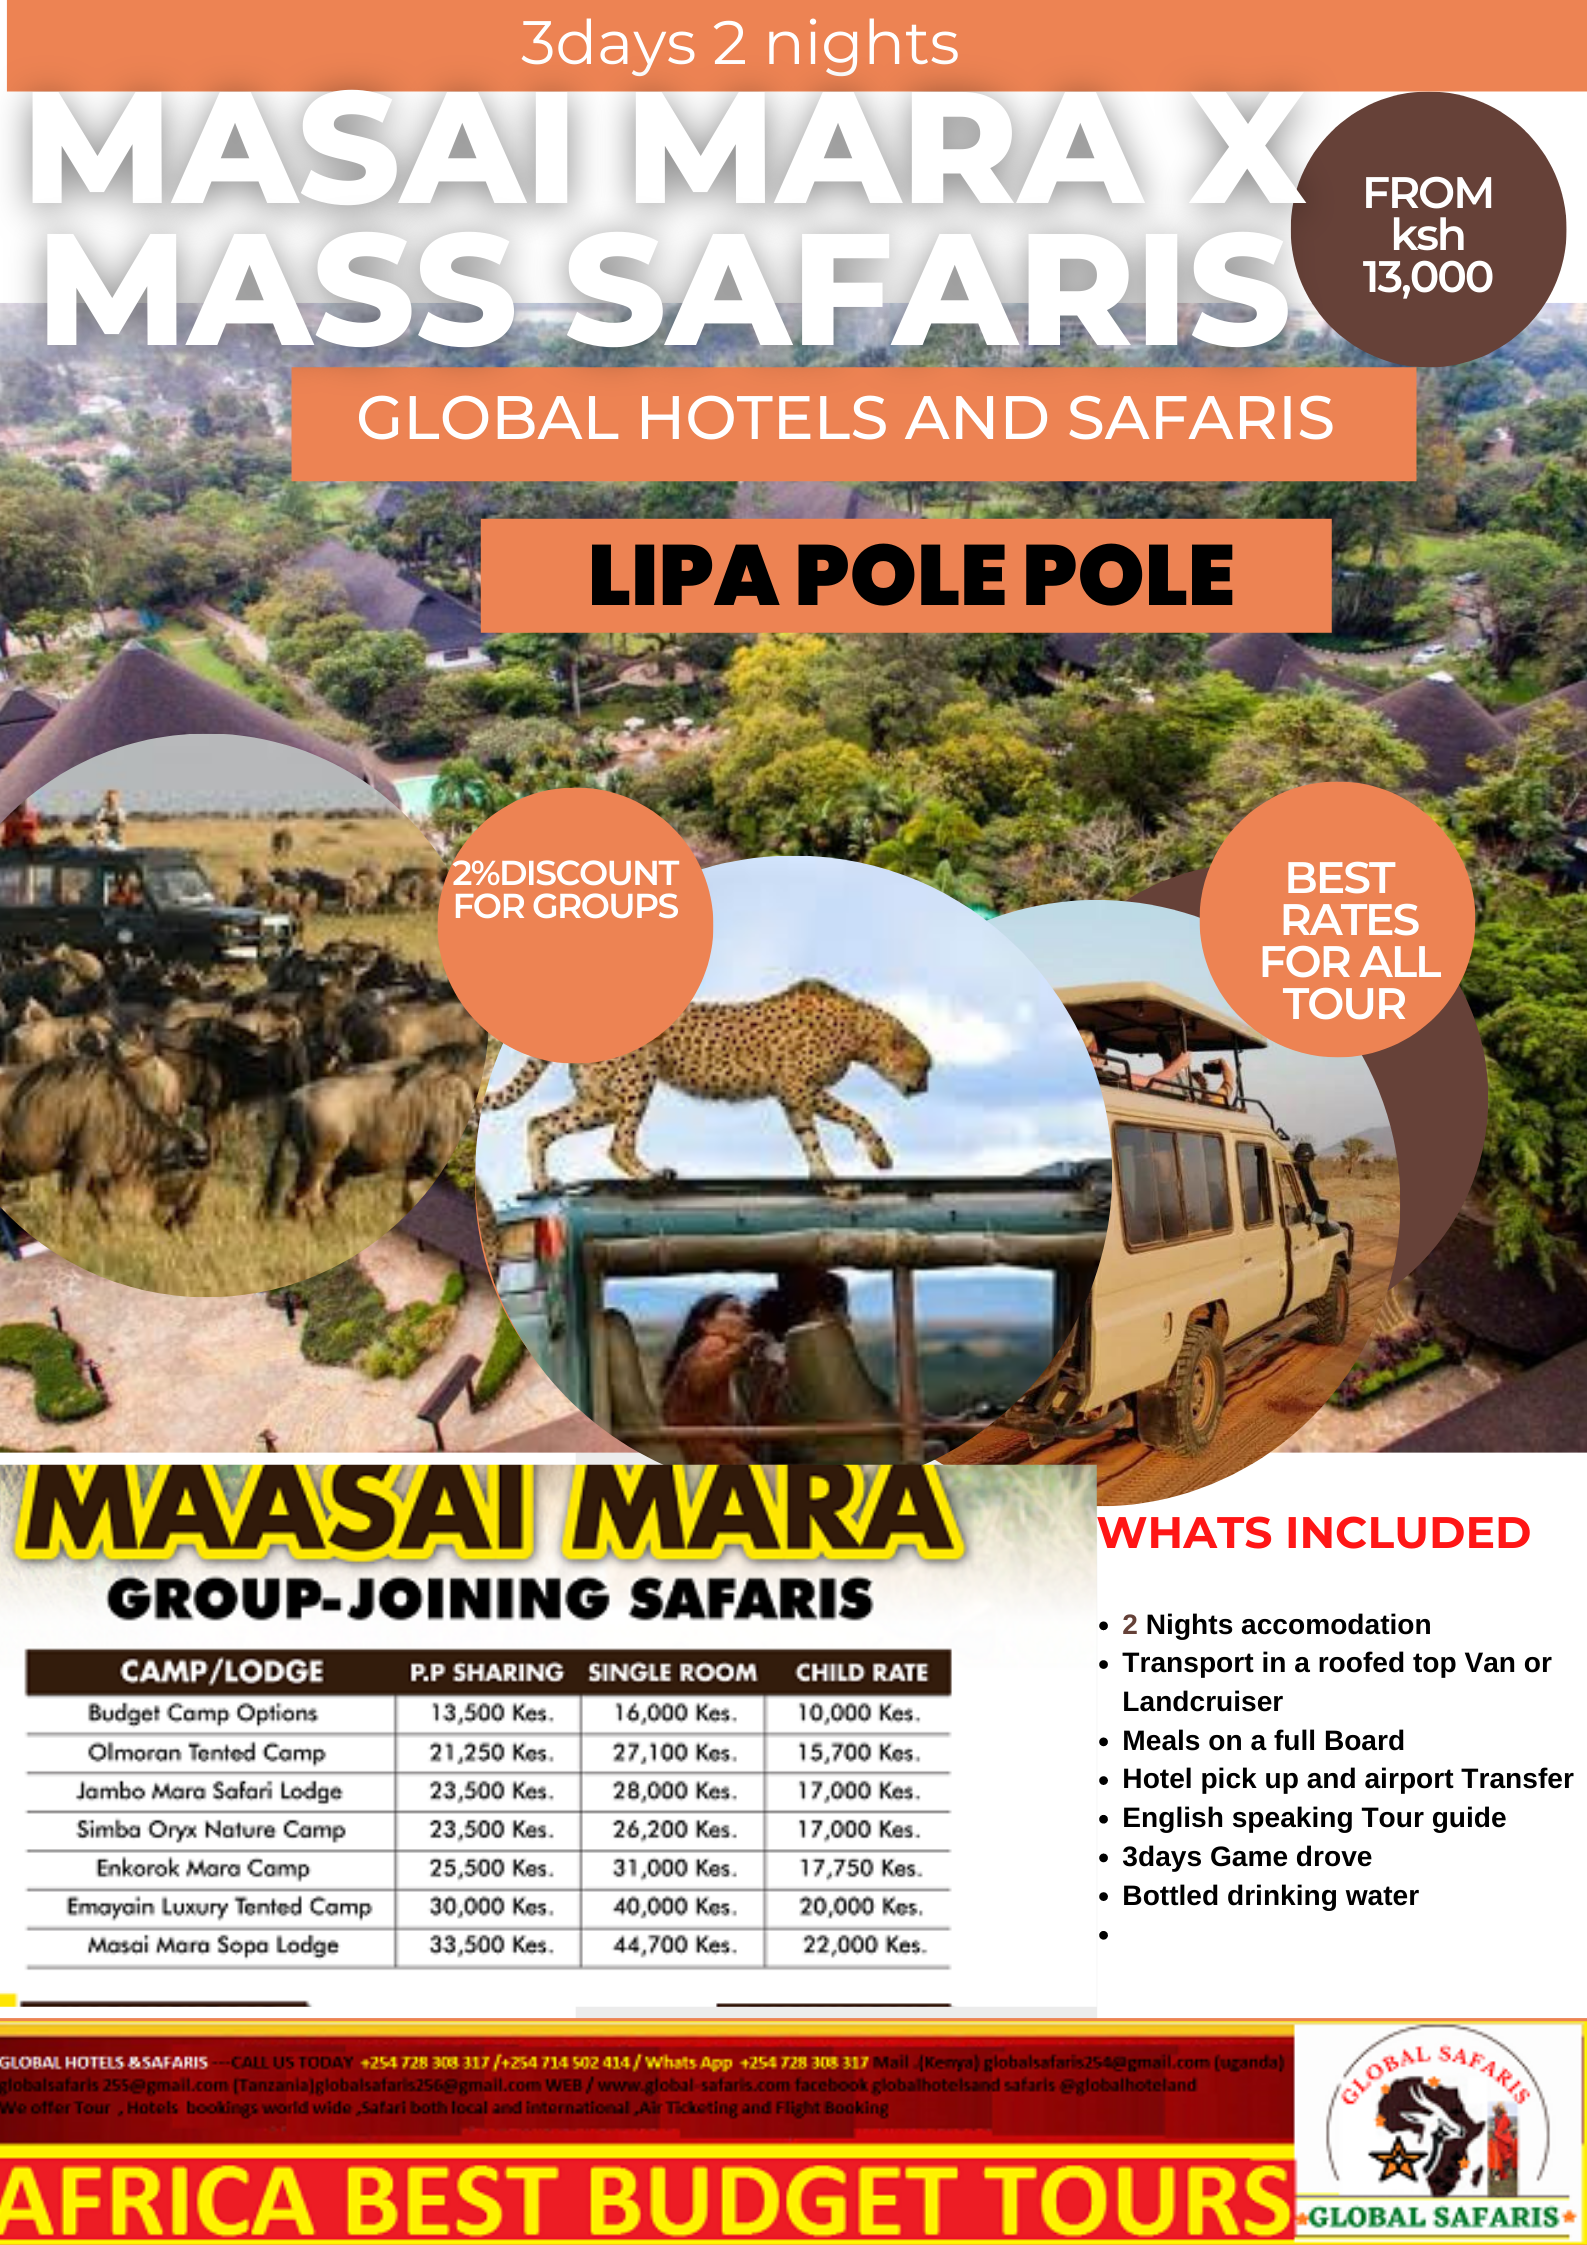 Masai mara 3days X MASS offer